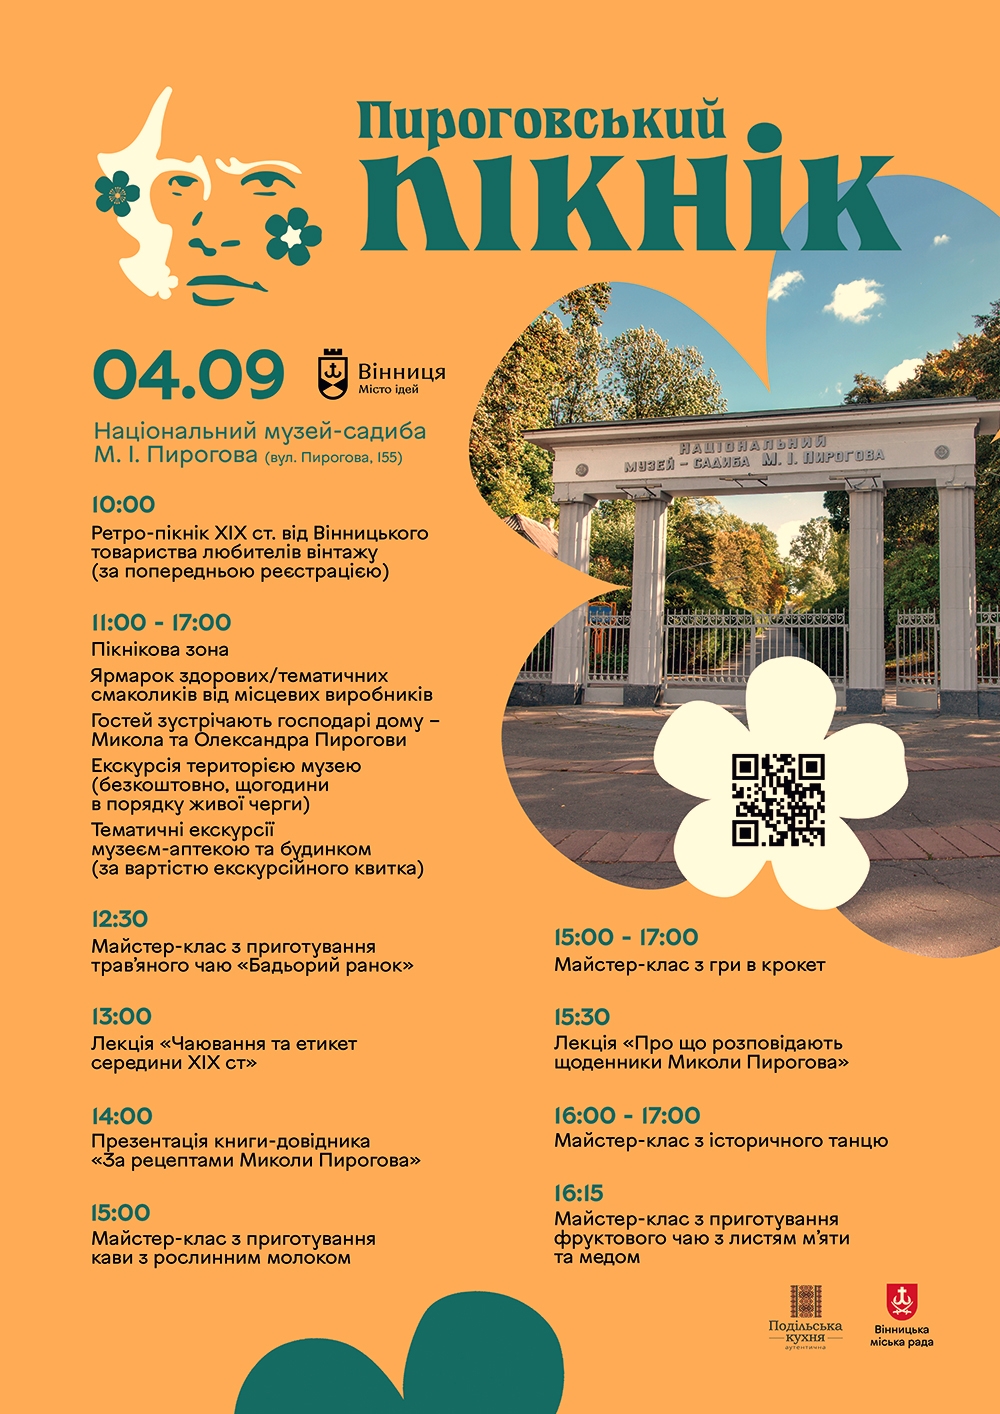 Пироговський пікнік у Вінниці: повна програма та розклад заходу